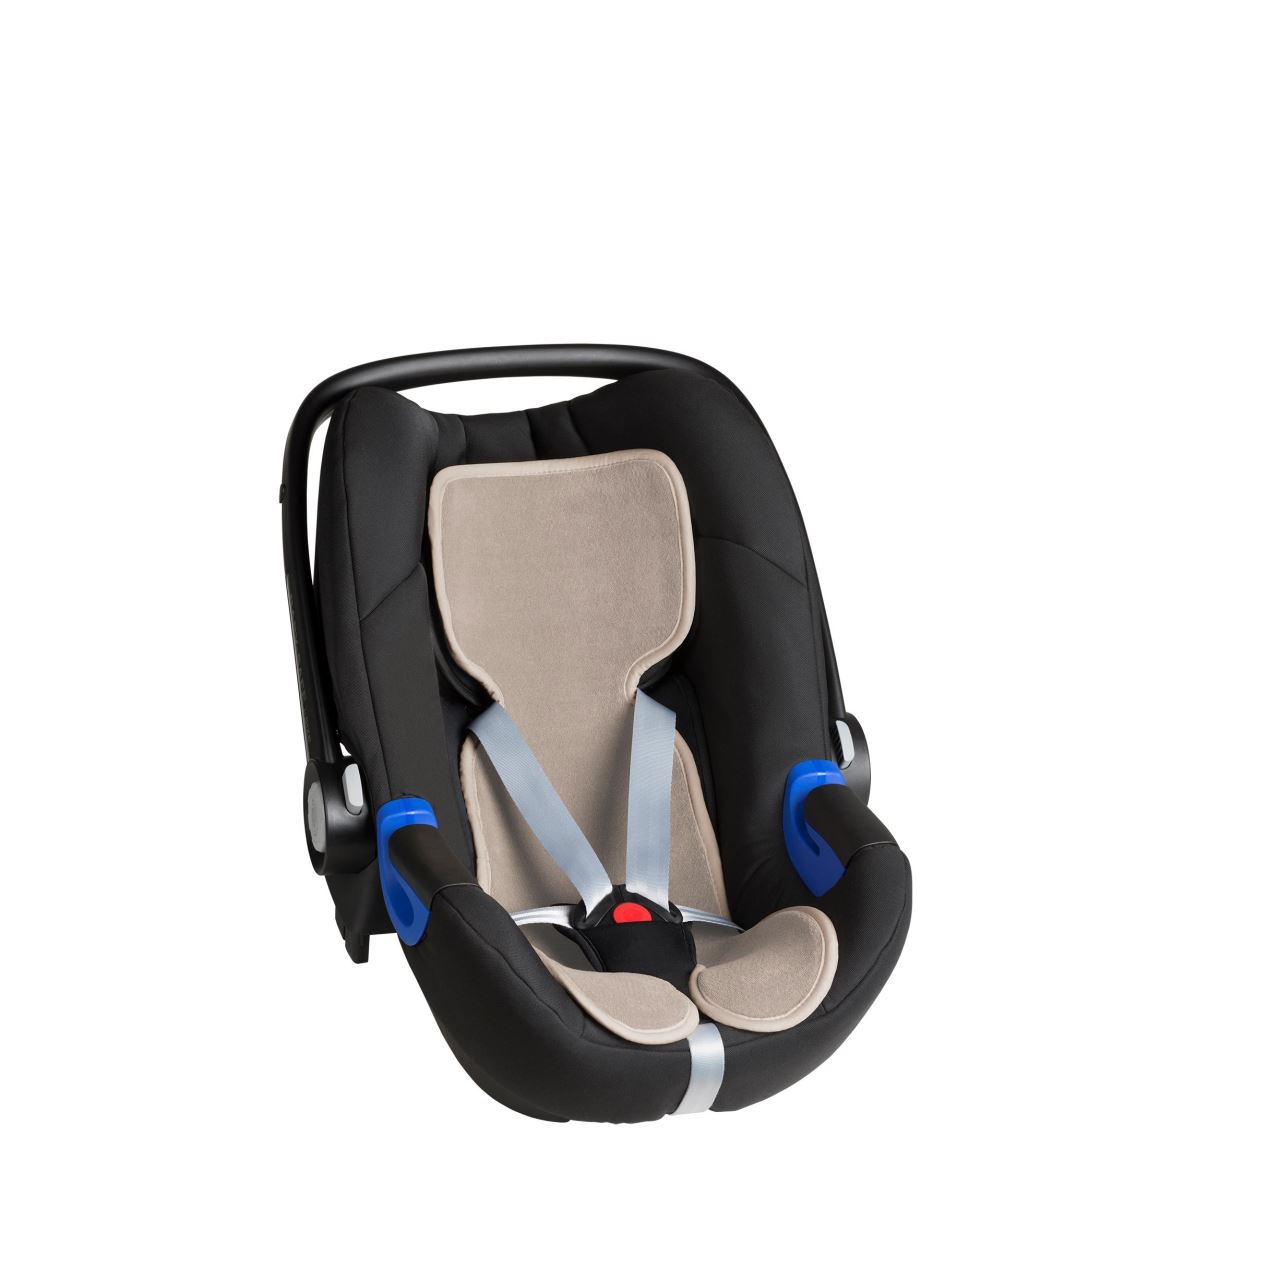 Protectie antitranspiratie pentru scaun auto Mesh 3D Grupa 0, Bej Nut, + 0 luni, Air Cuddle